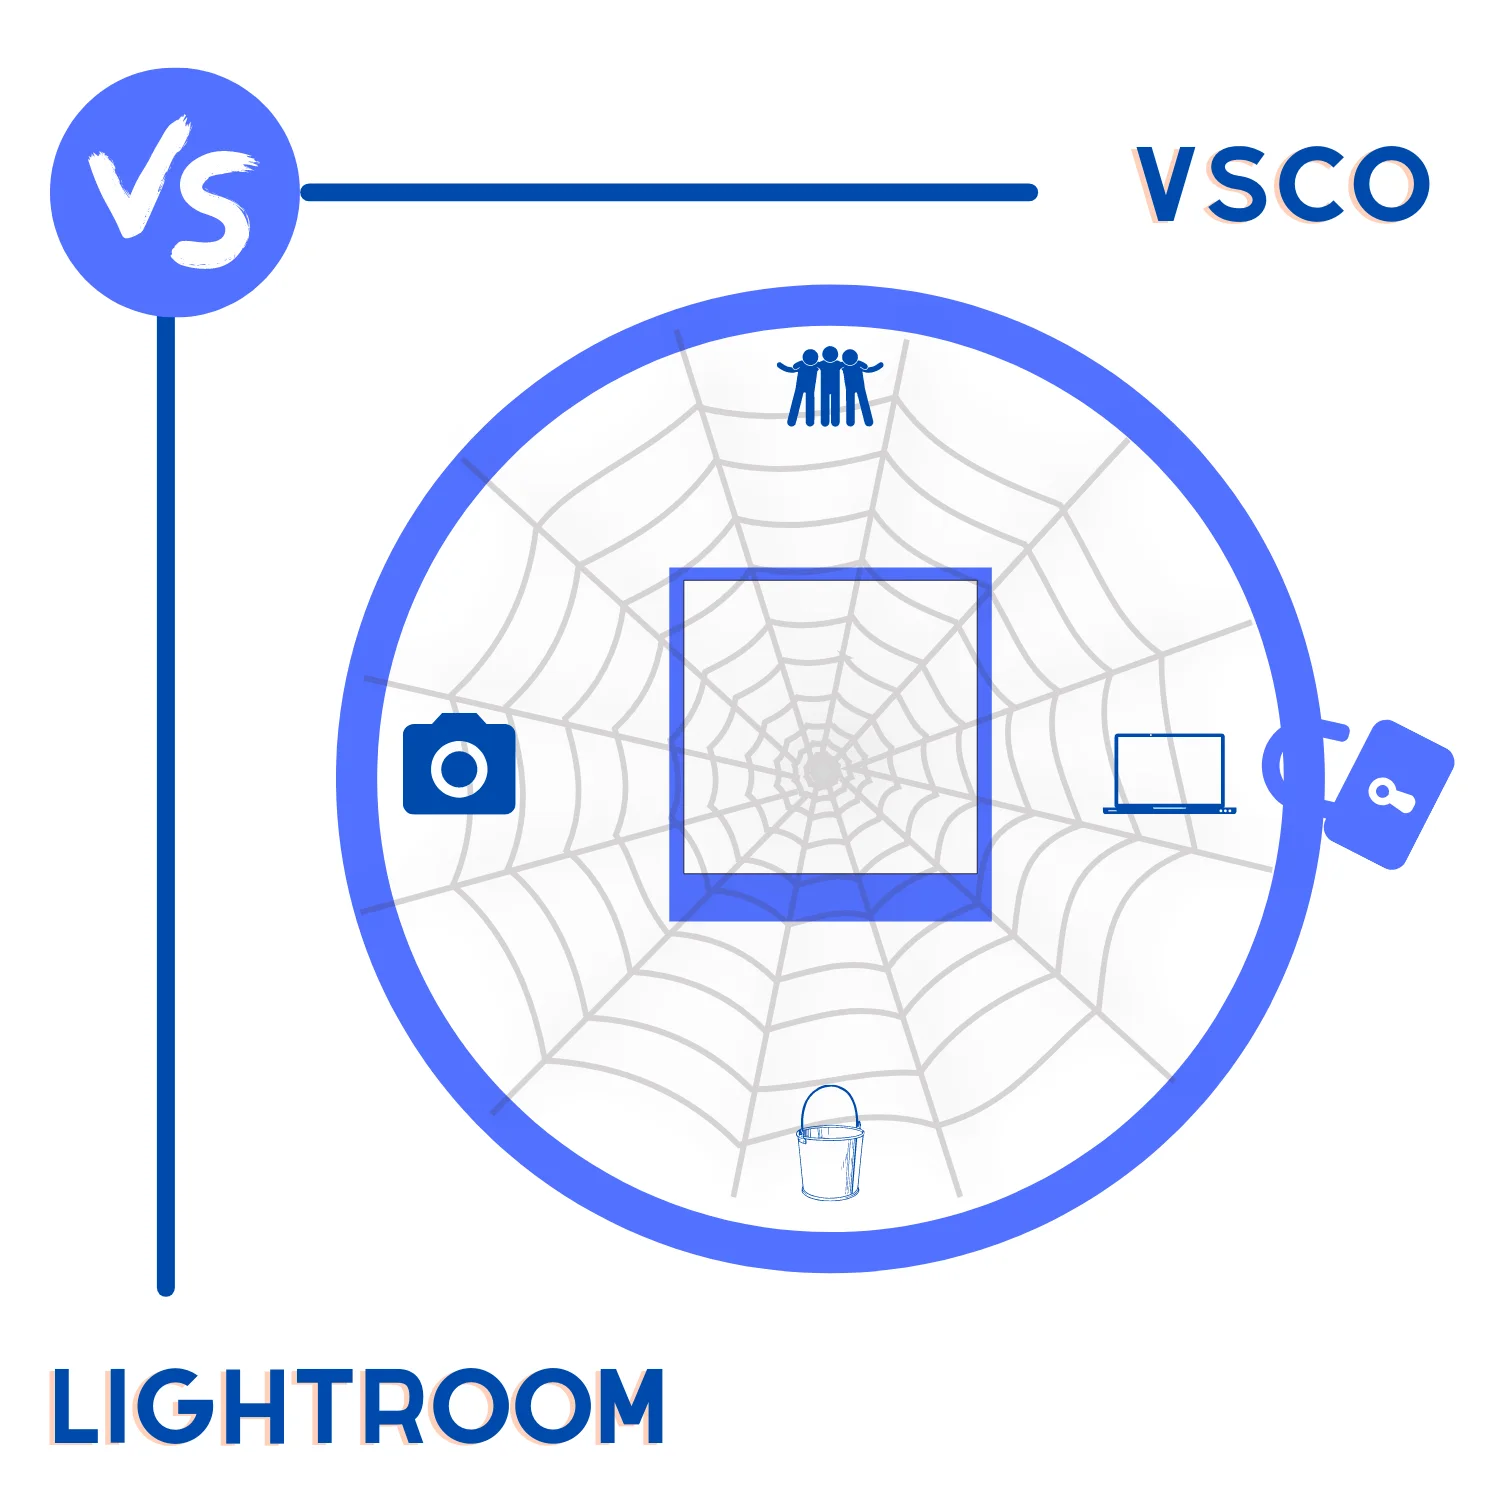 VSCO vs. Lightroom